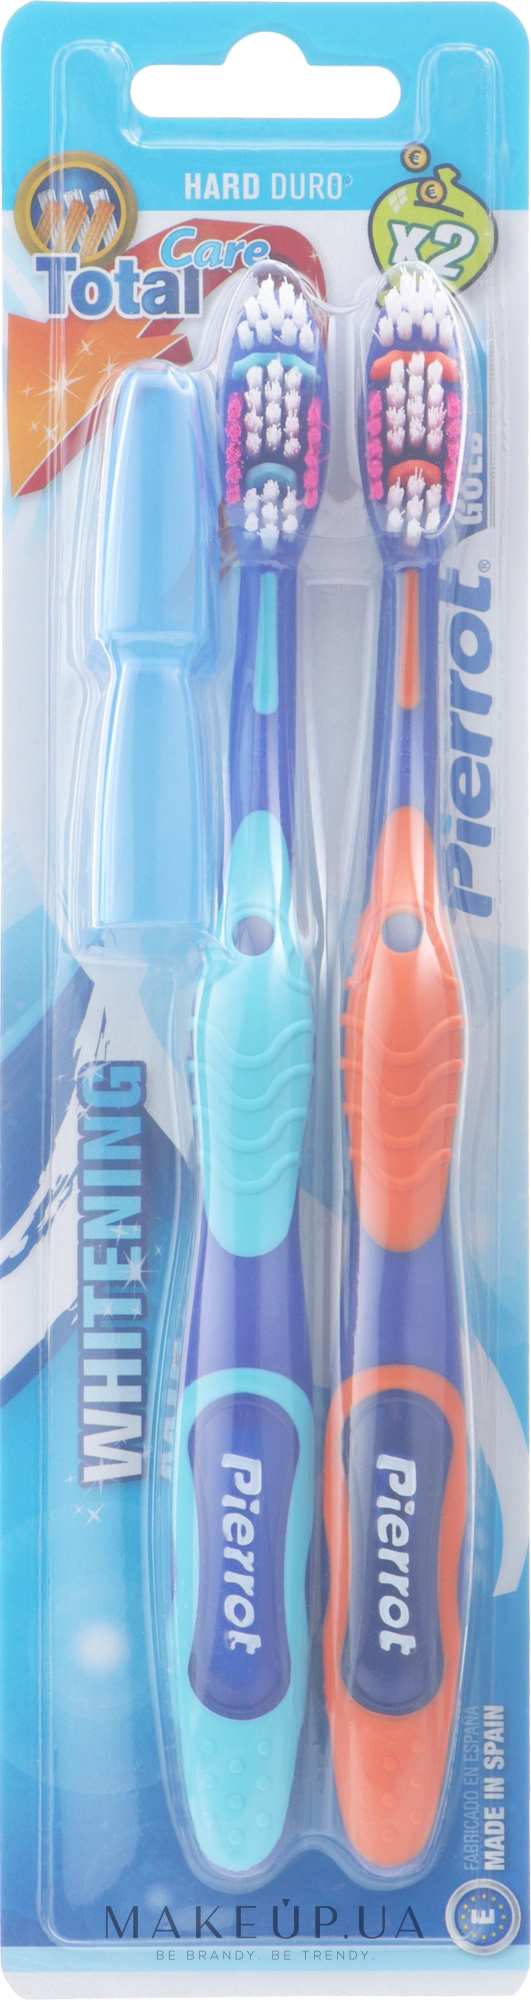 Зубная щетка жесткая, голубая + оранжевая - Pierrot Goldx2 Toothbrush Ref.345 — фото 2шт